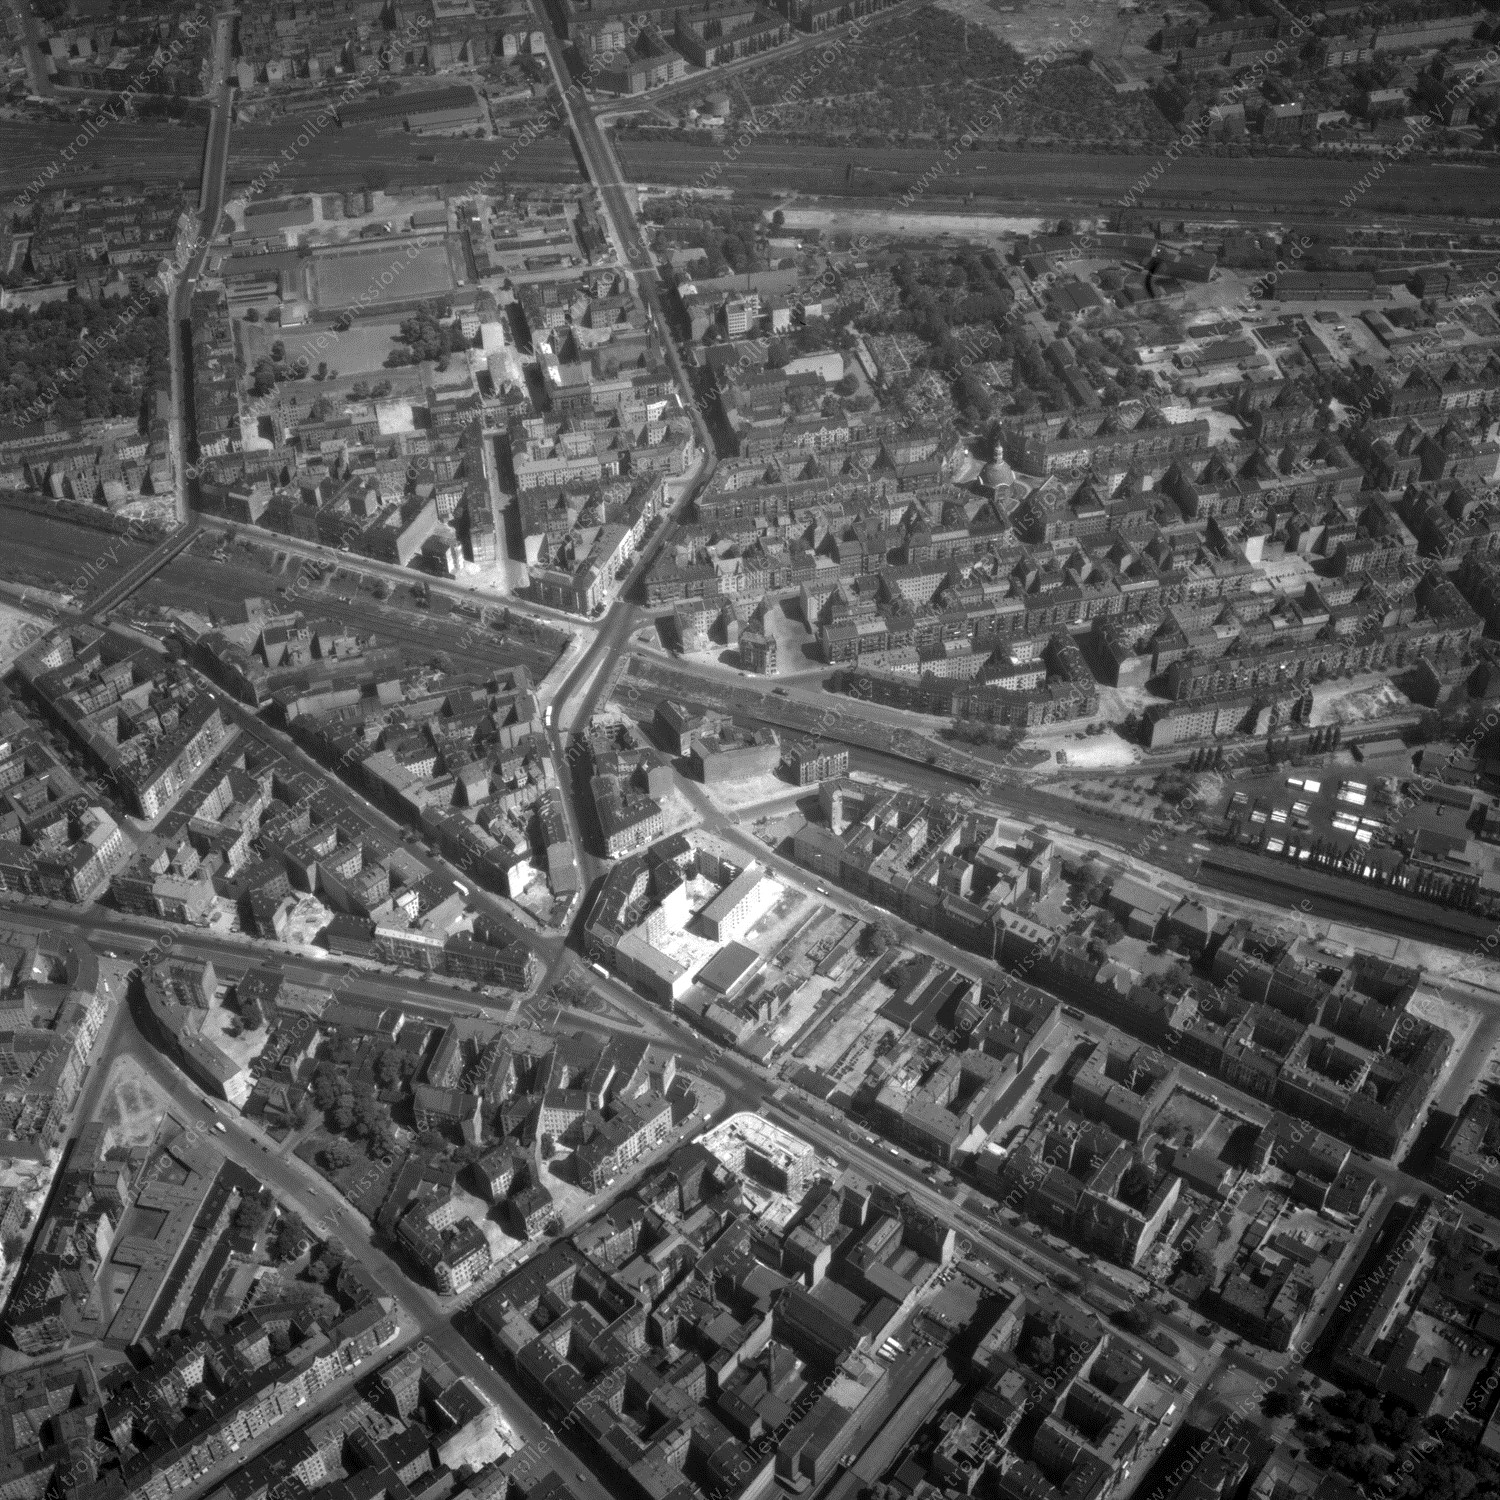 Alte Fotos und Luftbilder von Berlin - Luftbildaufnahme Nr. 01 - Historische Luftaufnahmen von West-Berlin aus dem Jahr 1954 - Flugstrecke Golf